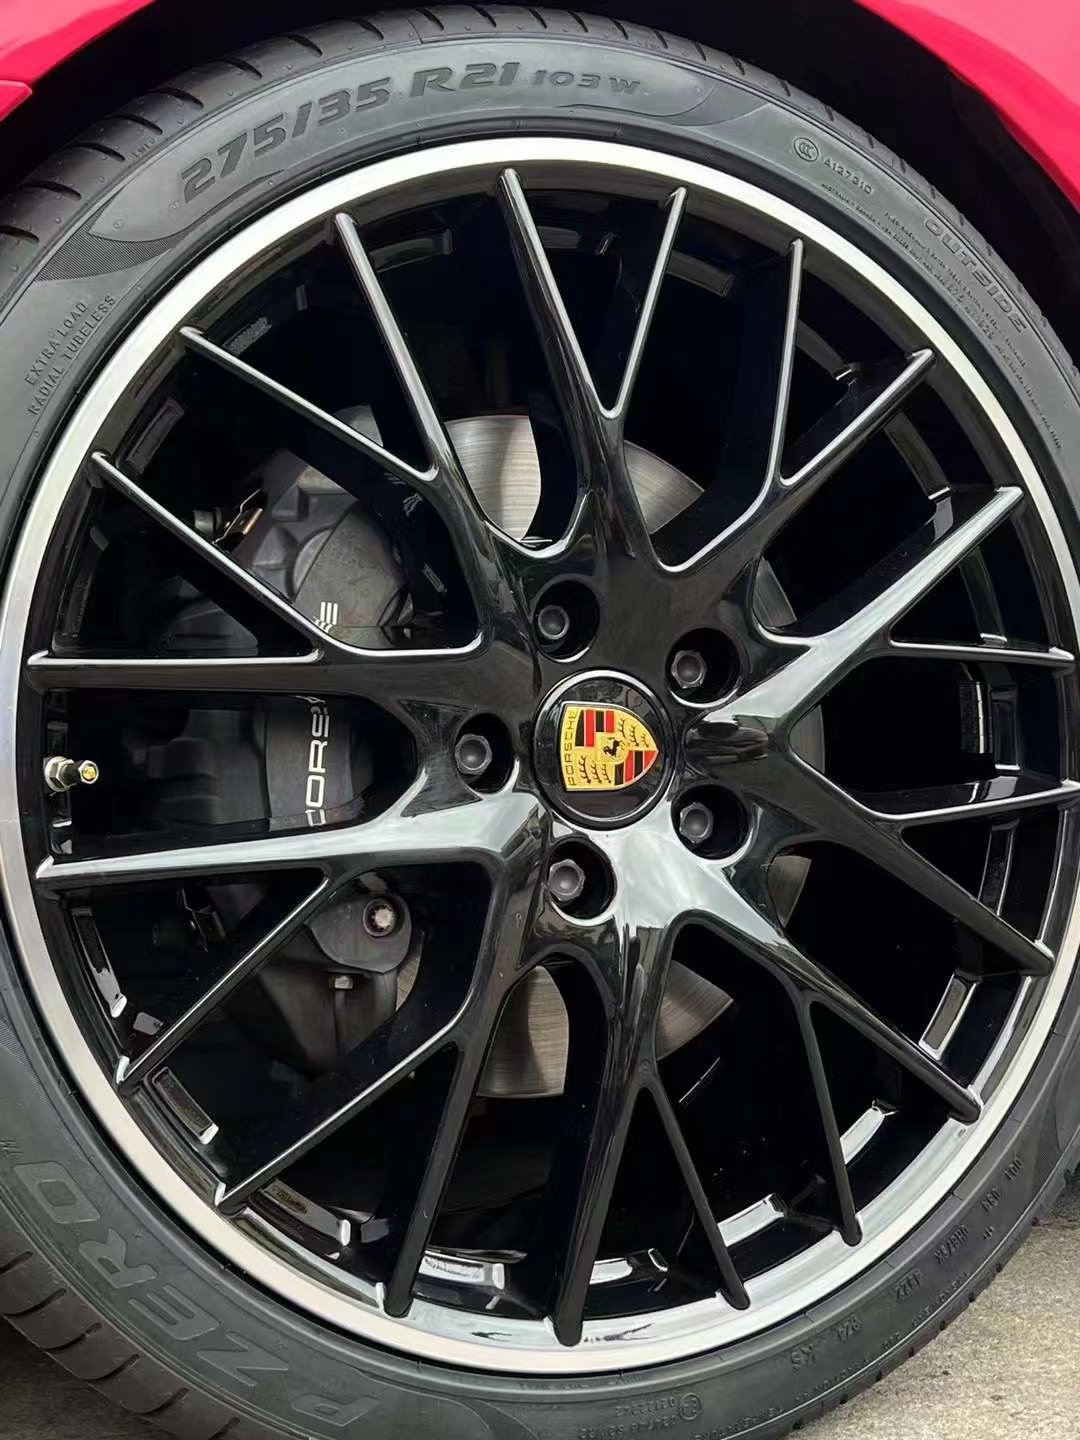 保时捷 帕拉梅拉 换原厂鸟巢轮毂21寸完工 搭配倍耐力轮胎！